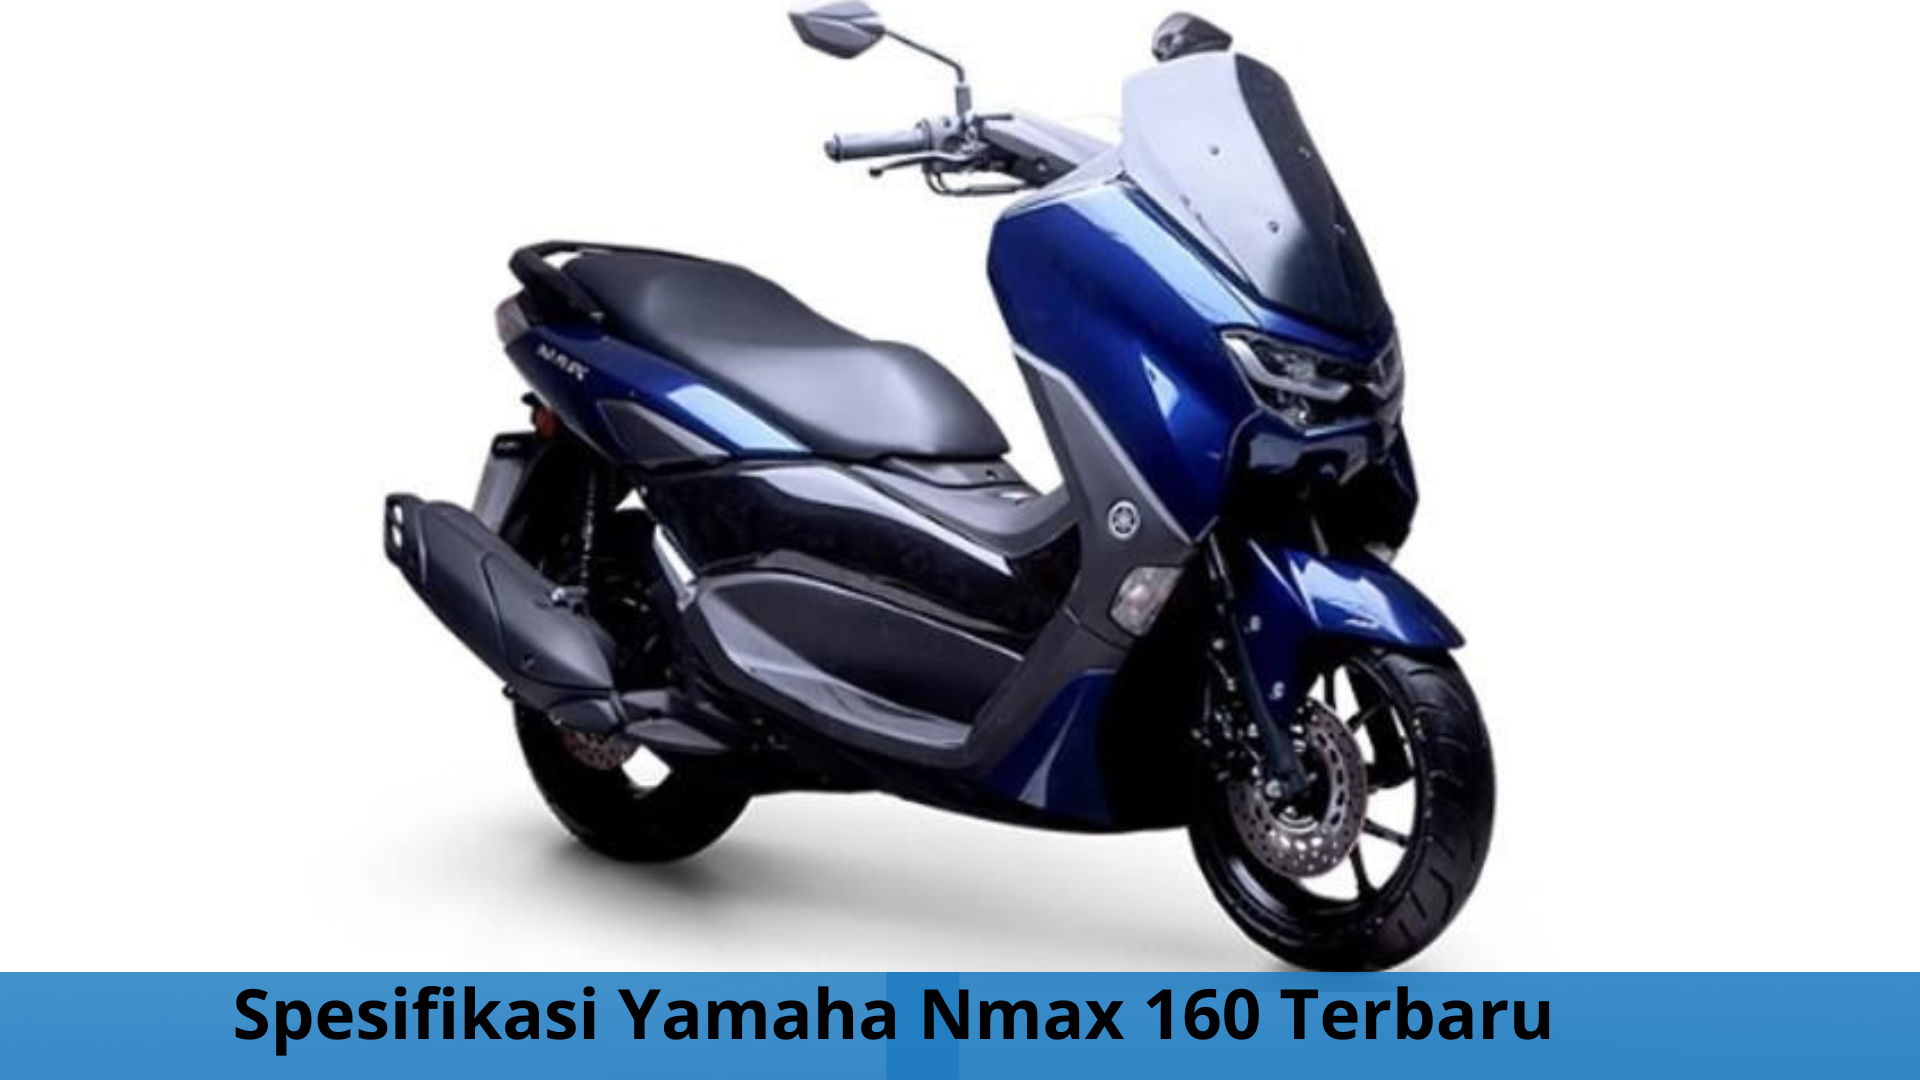 Yamaha Nmax 160 Terbaru, Tampil dengan Warna Elegan dan Teknologi Andalan